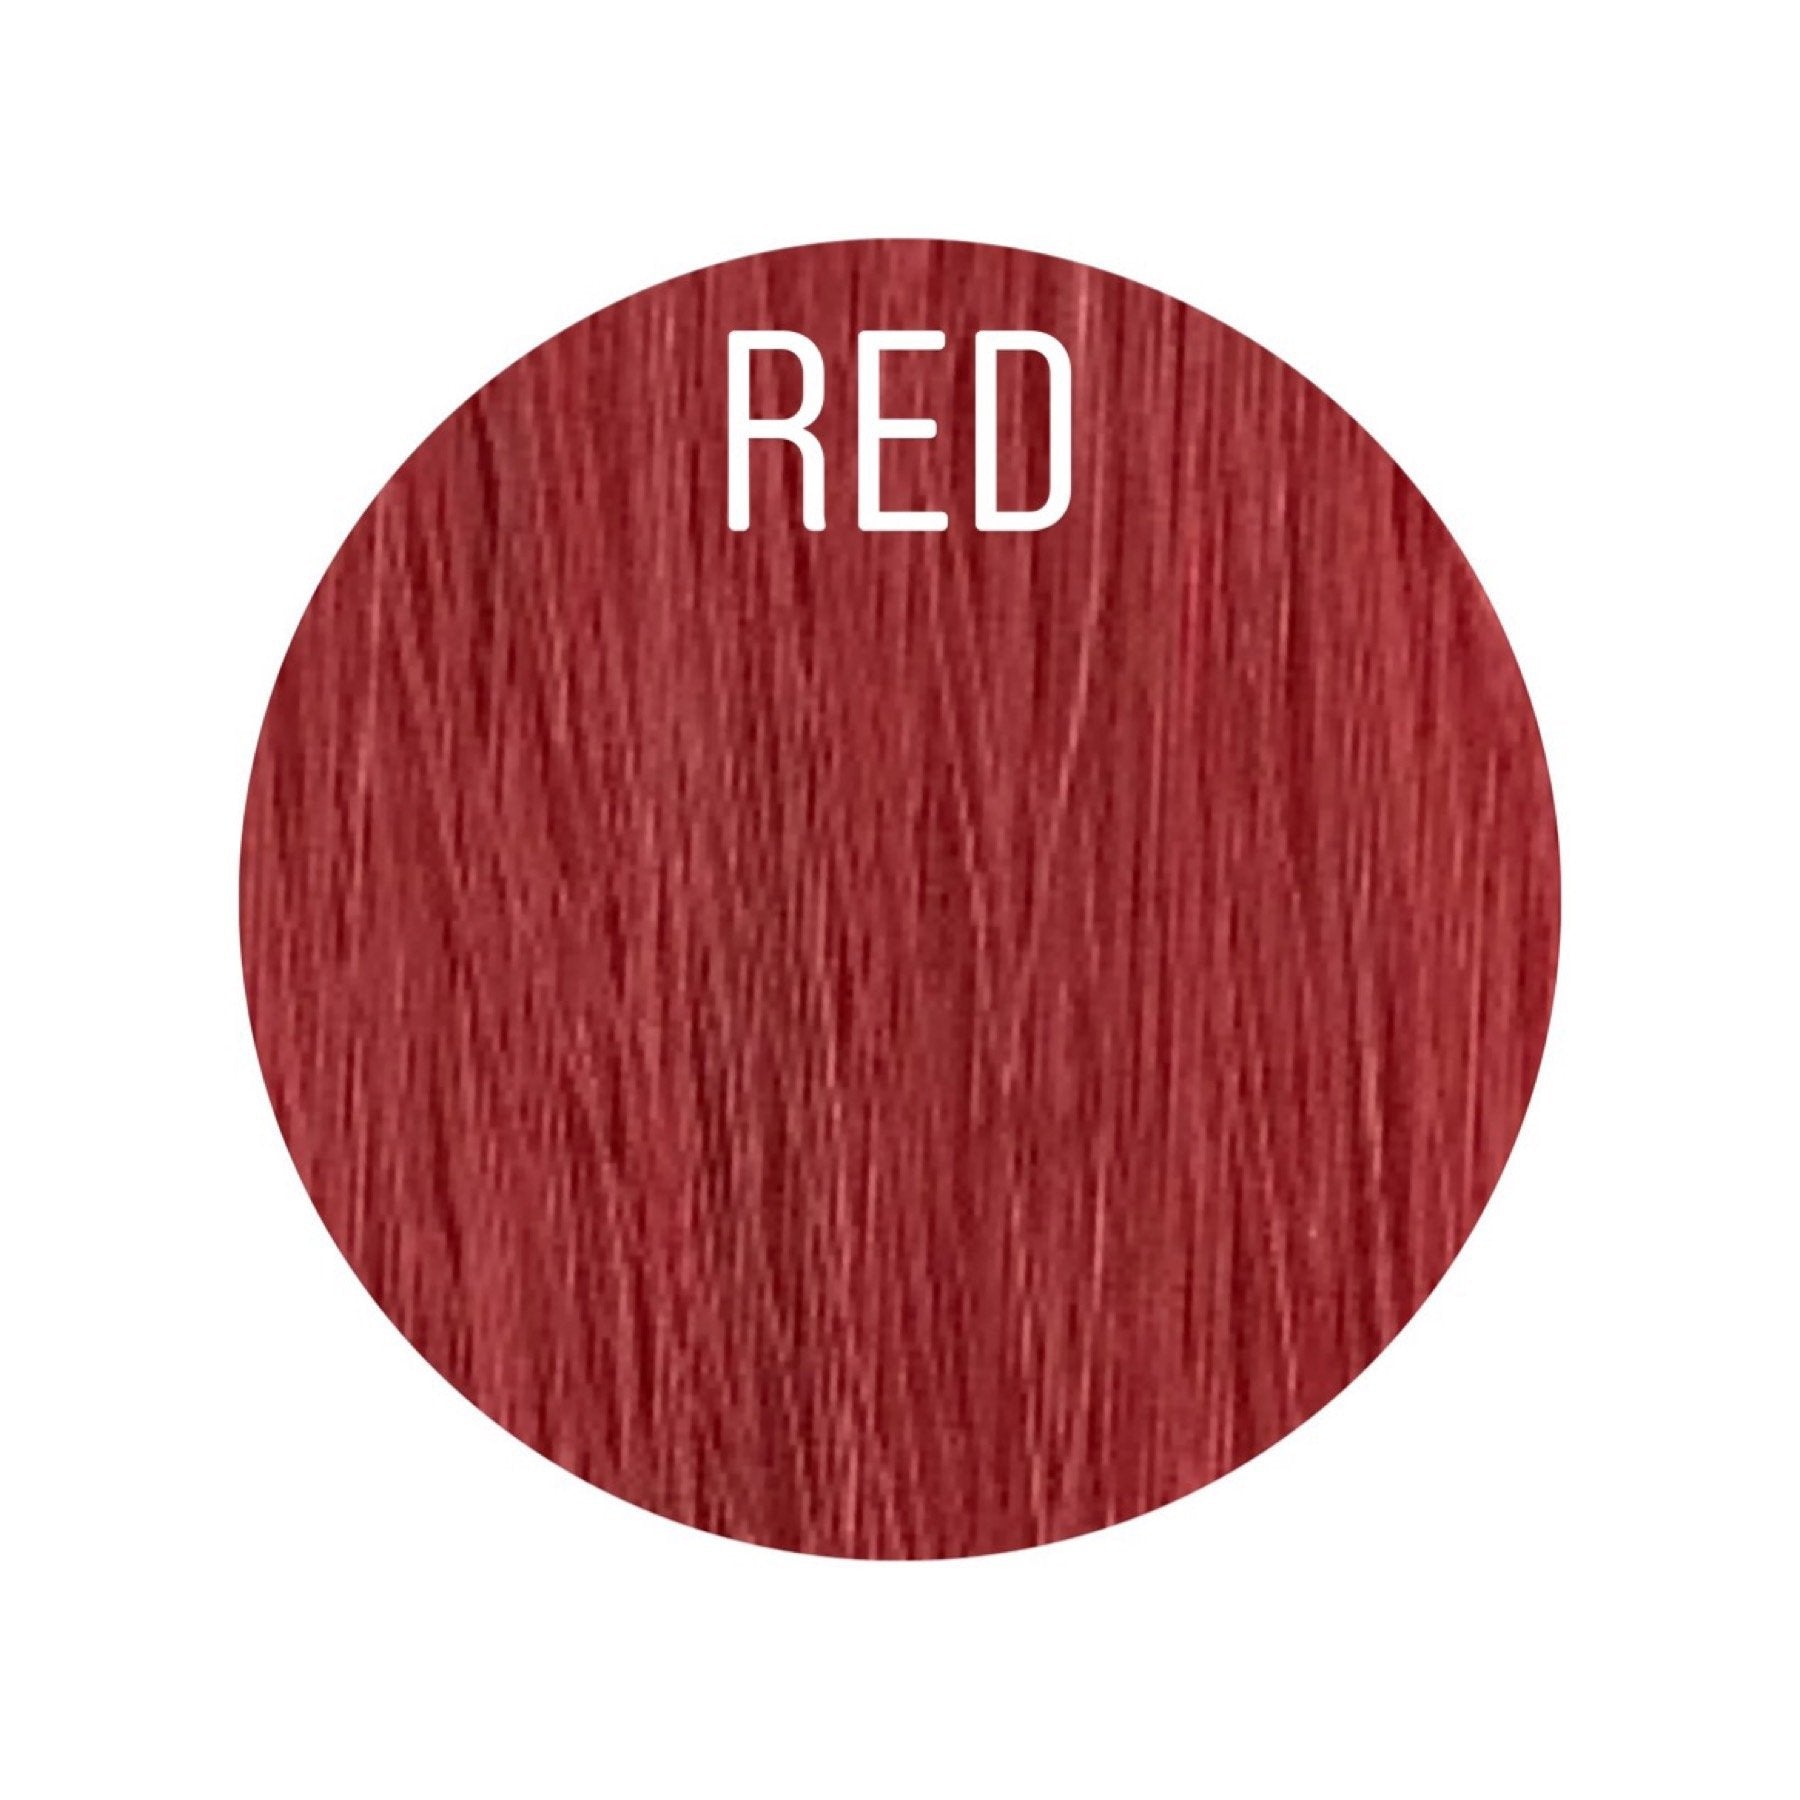 Wigs Color Red GVA hair_Retail price - GVA hair